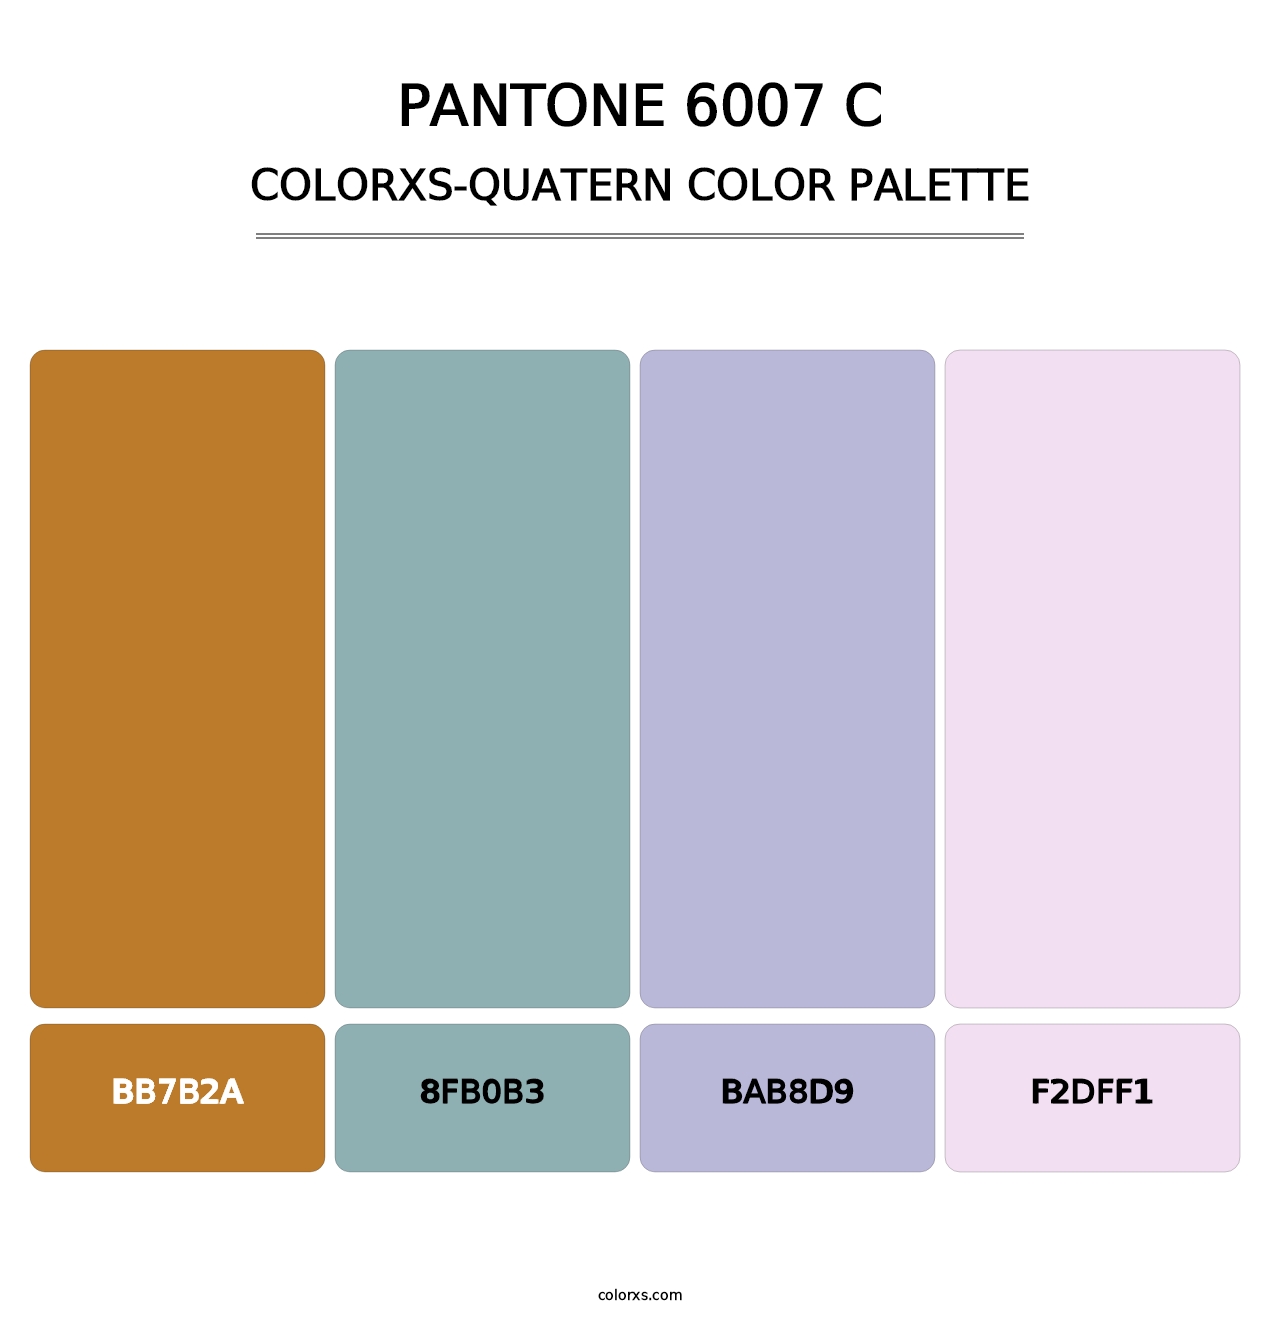 PANTONE 6007 C - Colorxs Quatern Palette